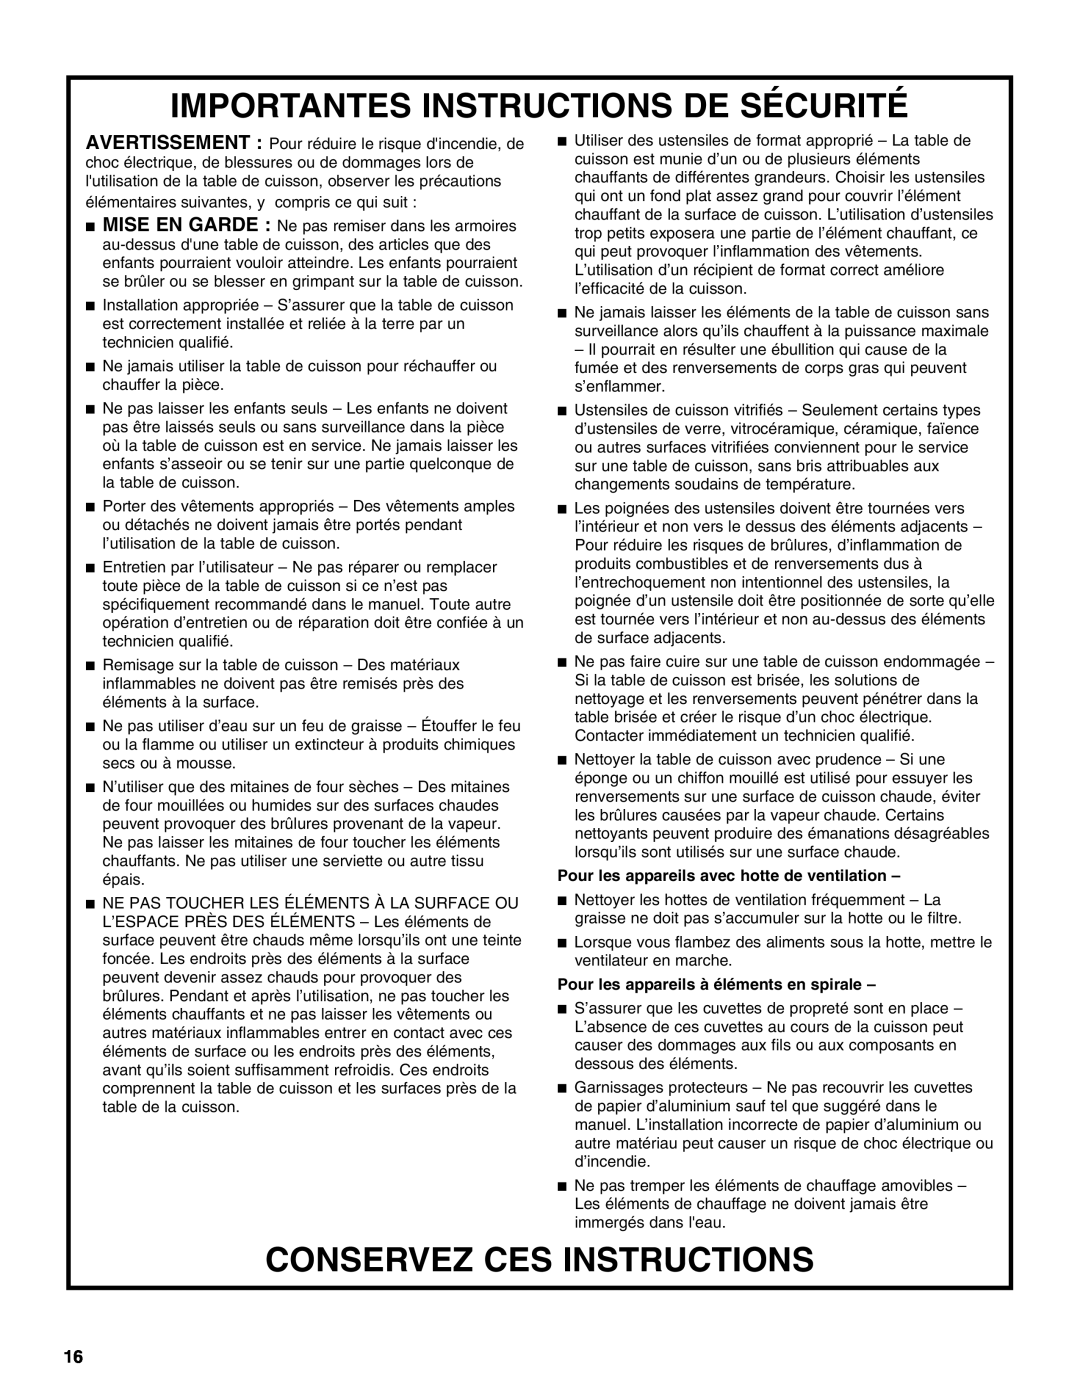 Jenn-Air JIC4430X manual Importantes Instructions De Sécurité, Conservez Ces Instructions 